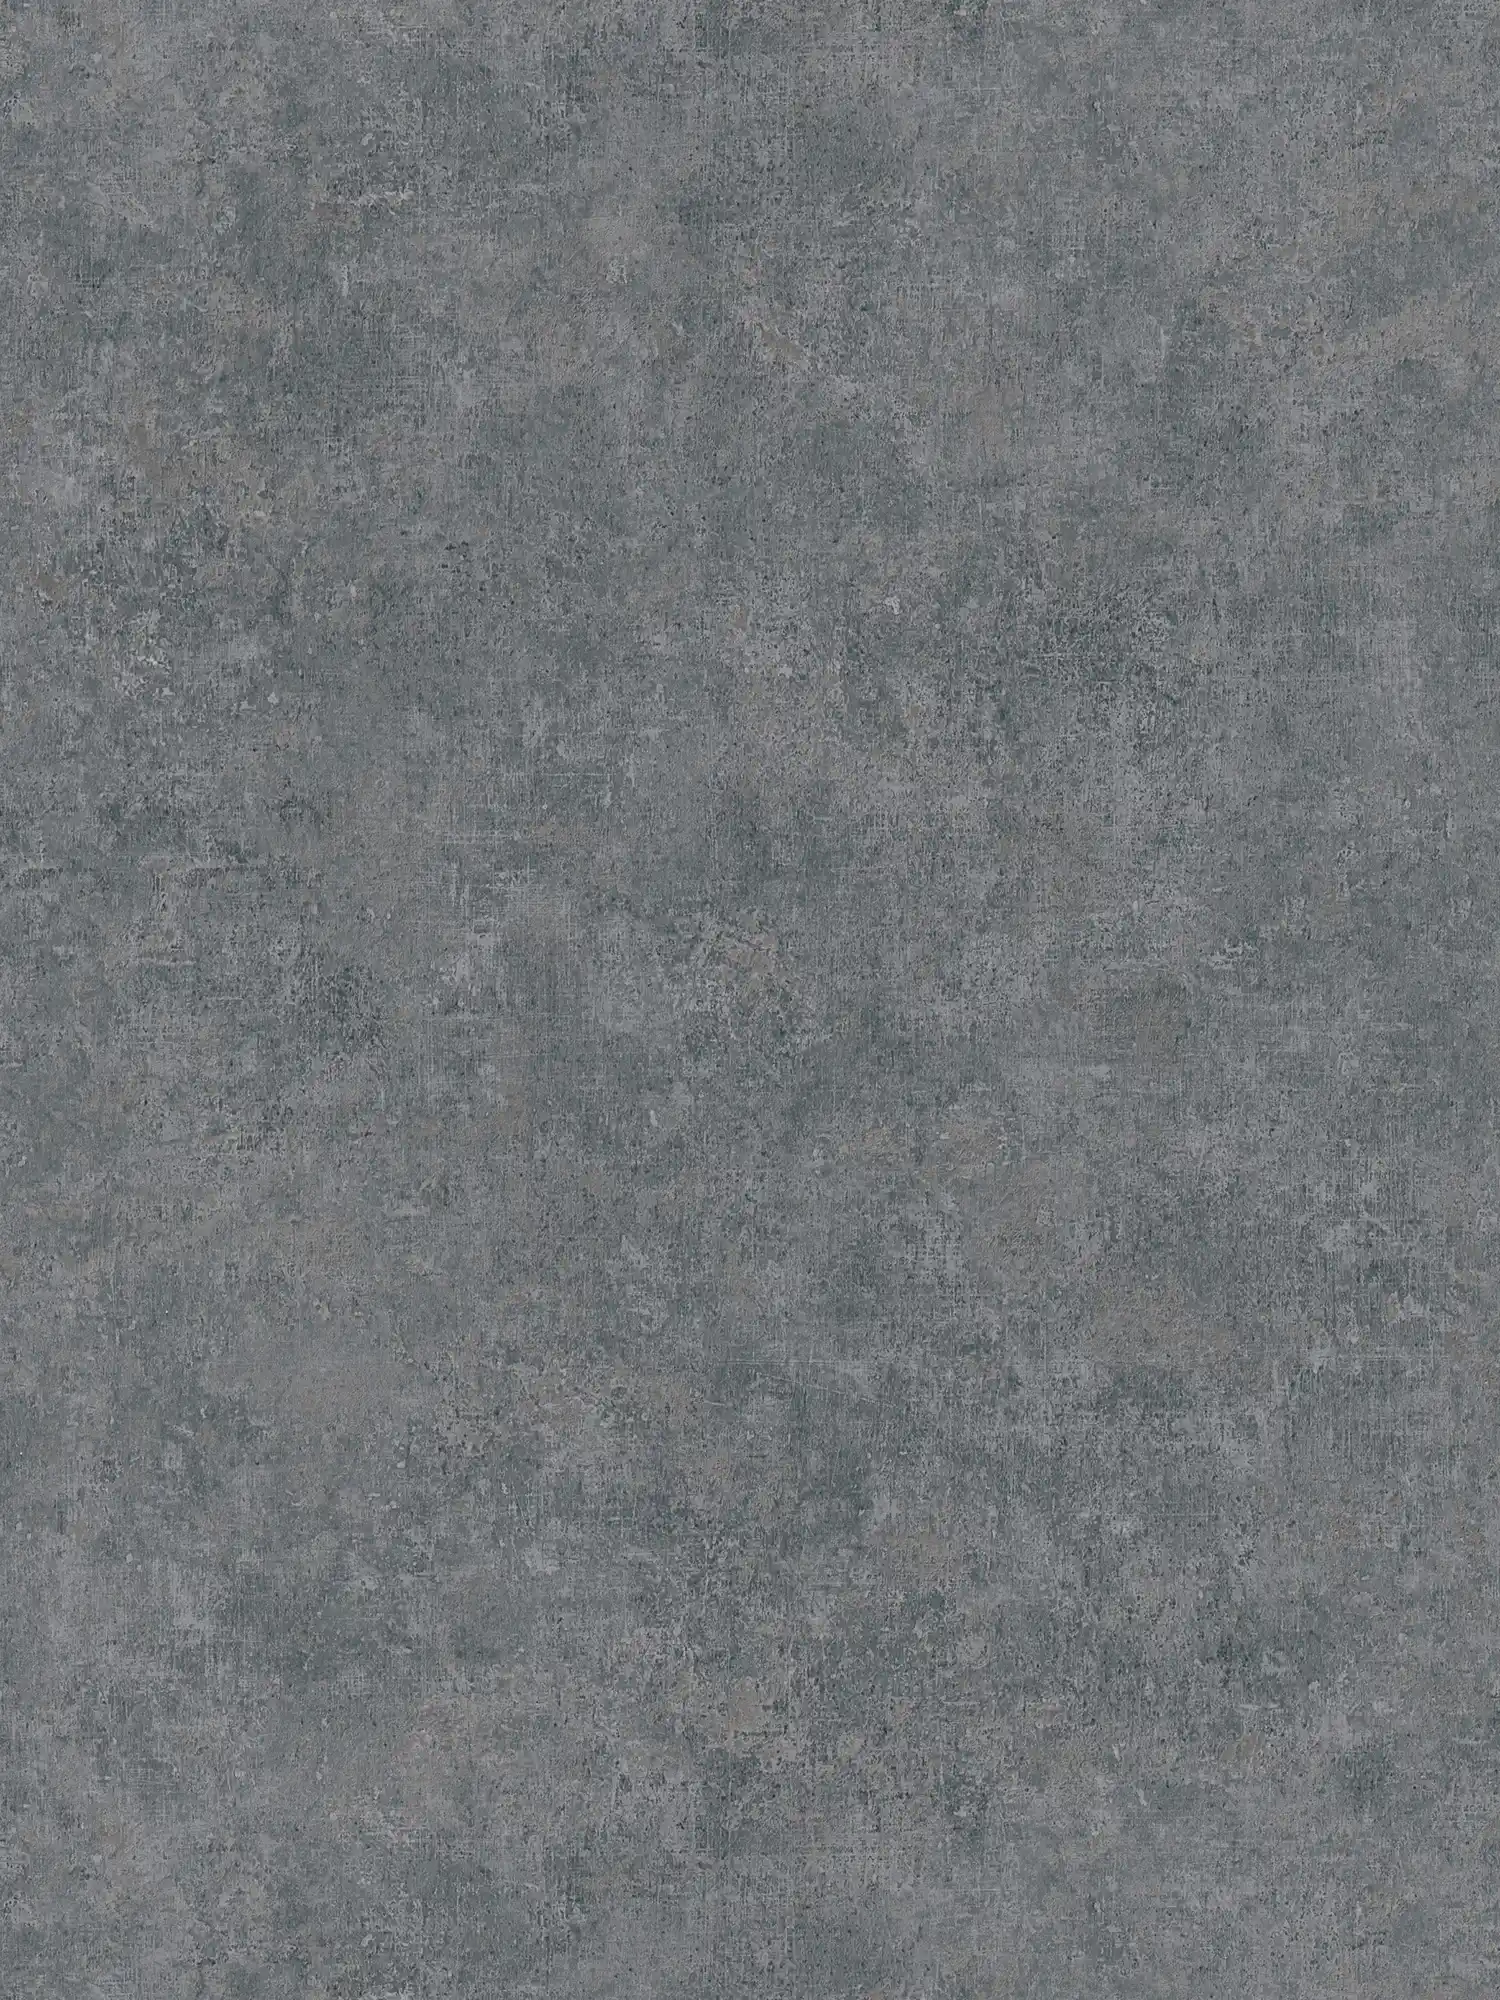 Carta da parati in tessuto non tessuto con motivo tono su tono, aspetto usato - grigio
